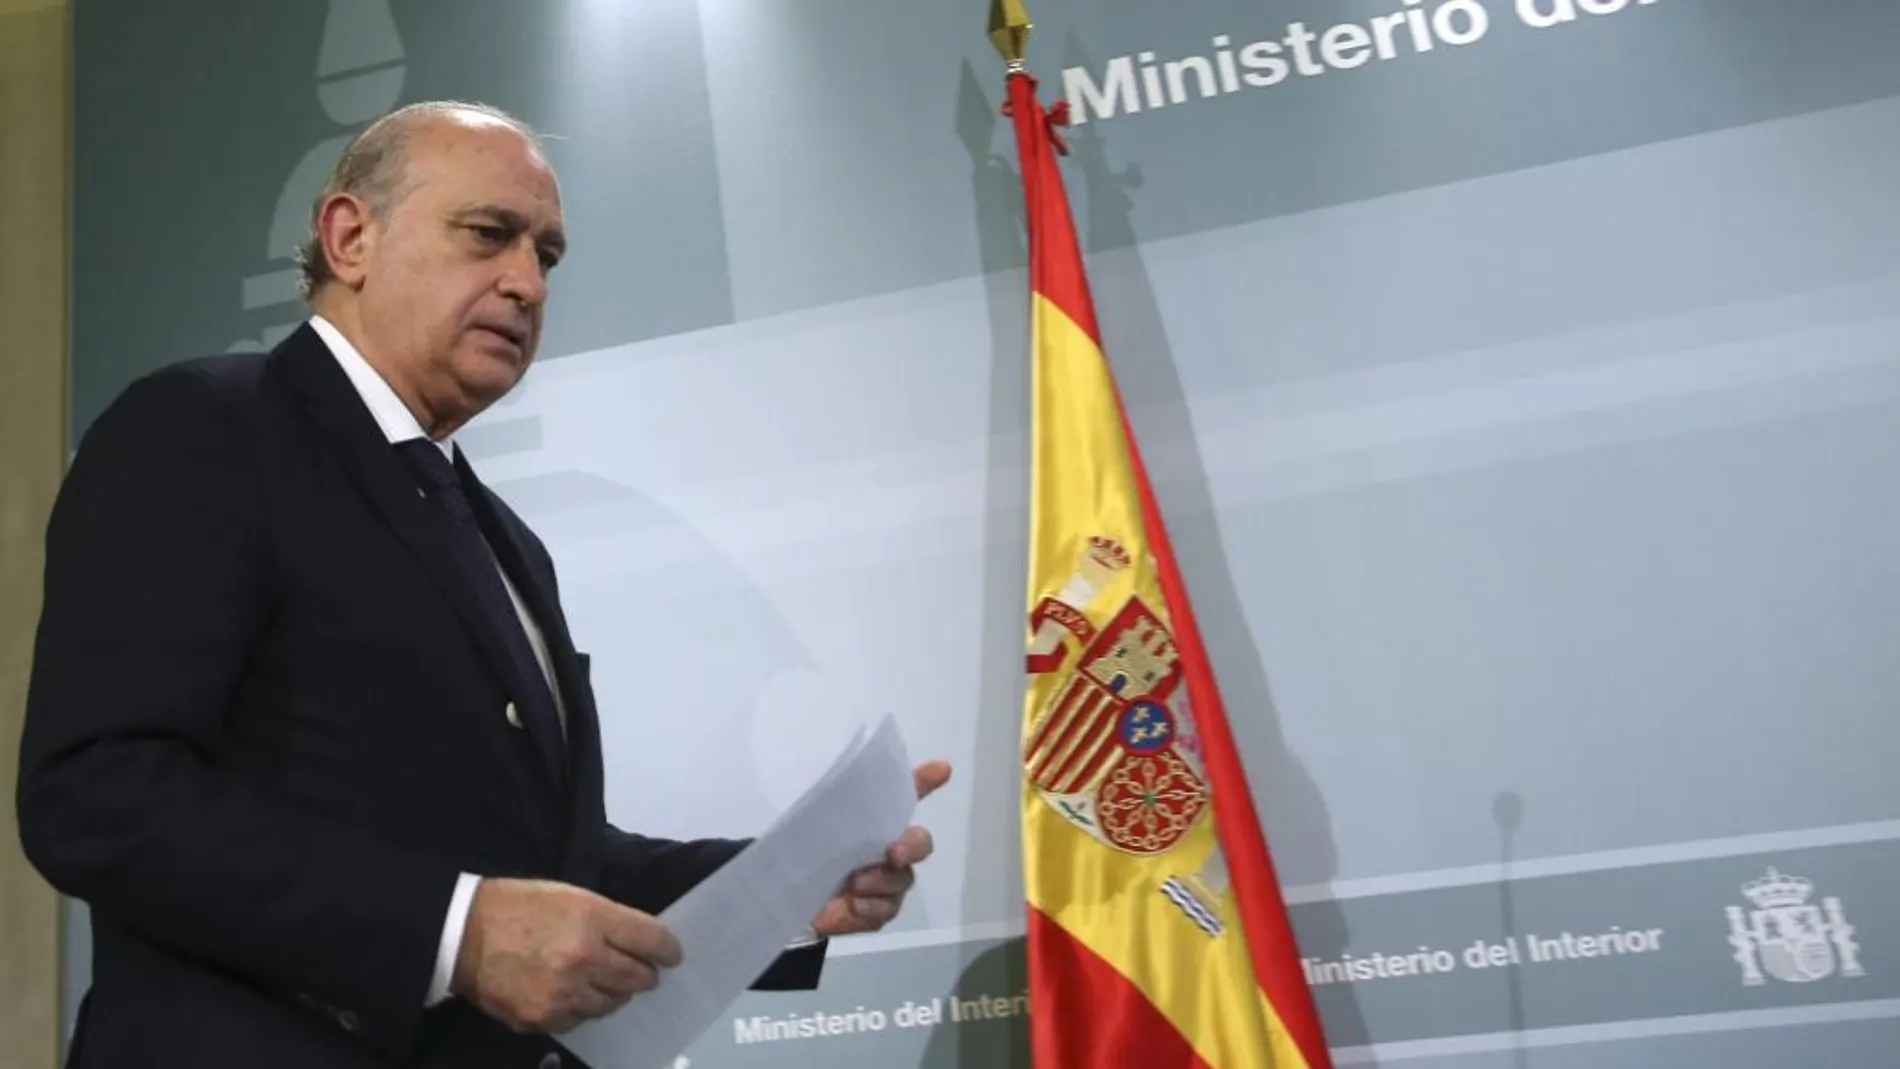 El ministro del Interior, Jorge Fernández Díaz, tras la reunión de la Comisión de Seguimiento del Pacto de Estado contra el terrorismo yihadista.